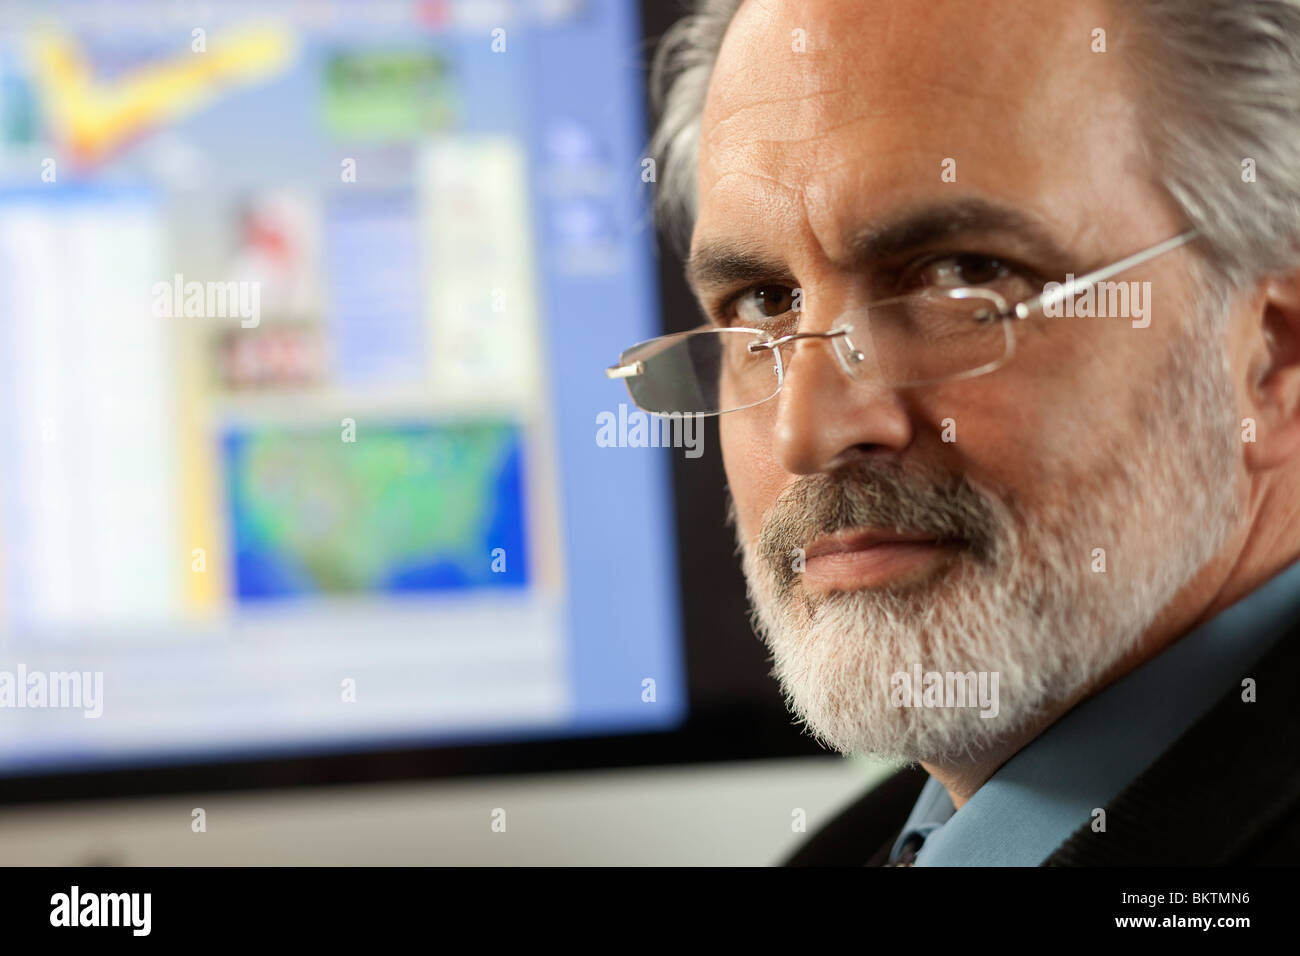 Close-up portrait of a businessman wearing eyeglasses et regardant la caméra avec un écran d'ordinateur en arrière-plan. Banque D'Images